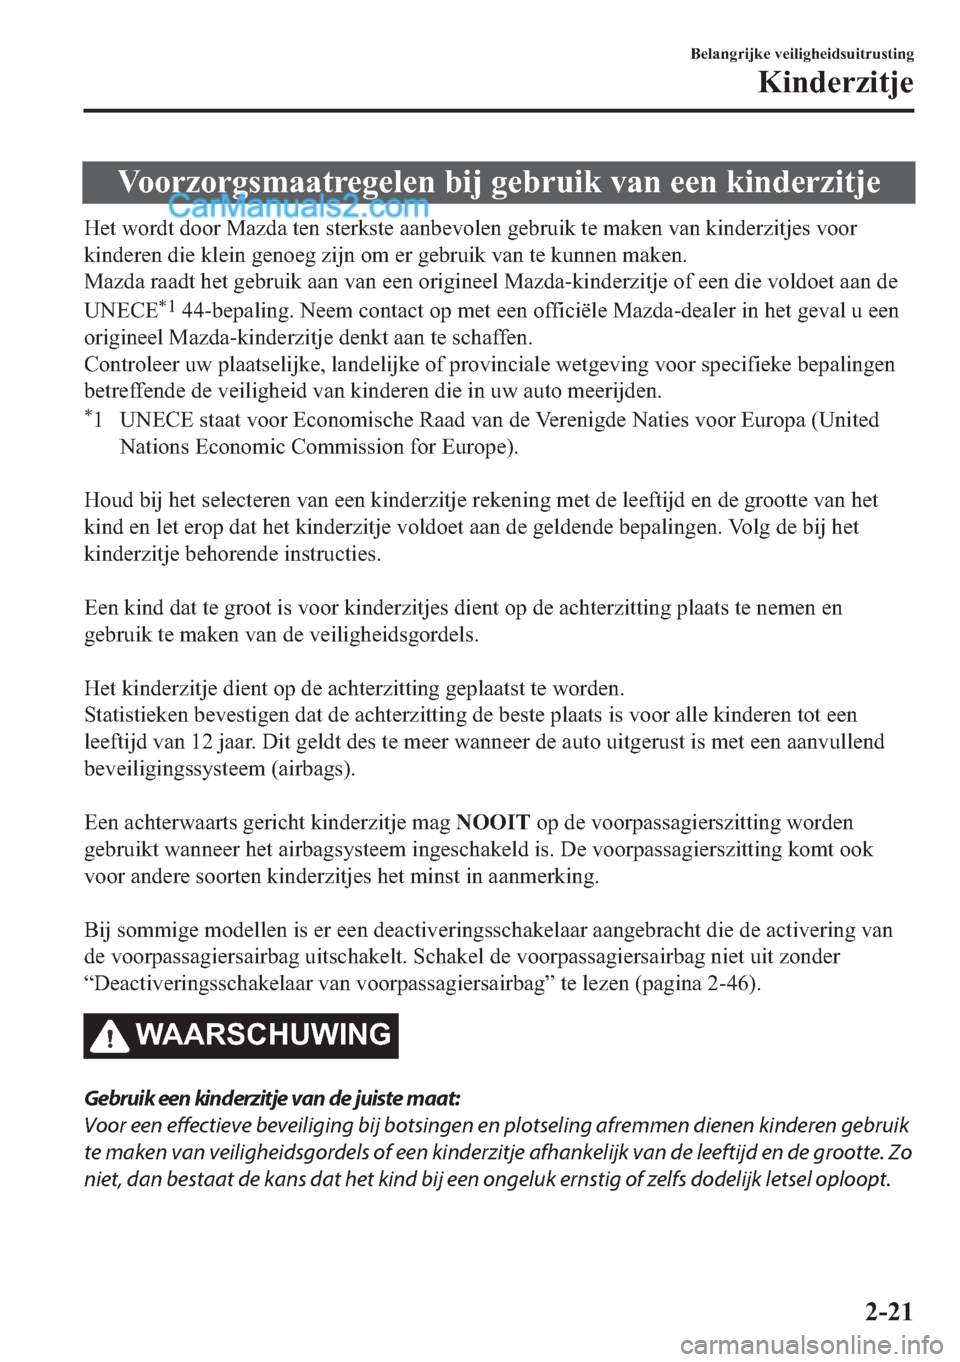 MAZDA MODEL 2 2018  Handleiding (in Dutch) �9�R�R�U�]�R�U�J�V�P�D�D�W�U�H�J�H�O�H�Q��E�L�M��J�H�E�U�X�L�N��Y�D�Q��H�H�Q��N�L�Q�G�H�U�]�L�W�M�H
�+�H�W��Z�R�U�G�W��G�R�R�U��0�D�]�G�D��W�H�Q��V�W�H�U�N�V�W�H��D�D�Q�E�H�Y�R�O�H�Q��J�H�